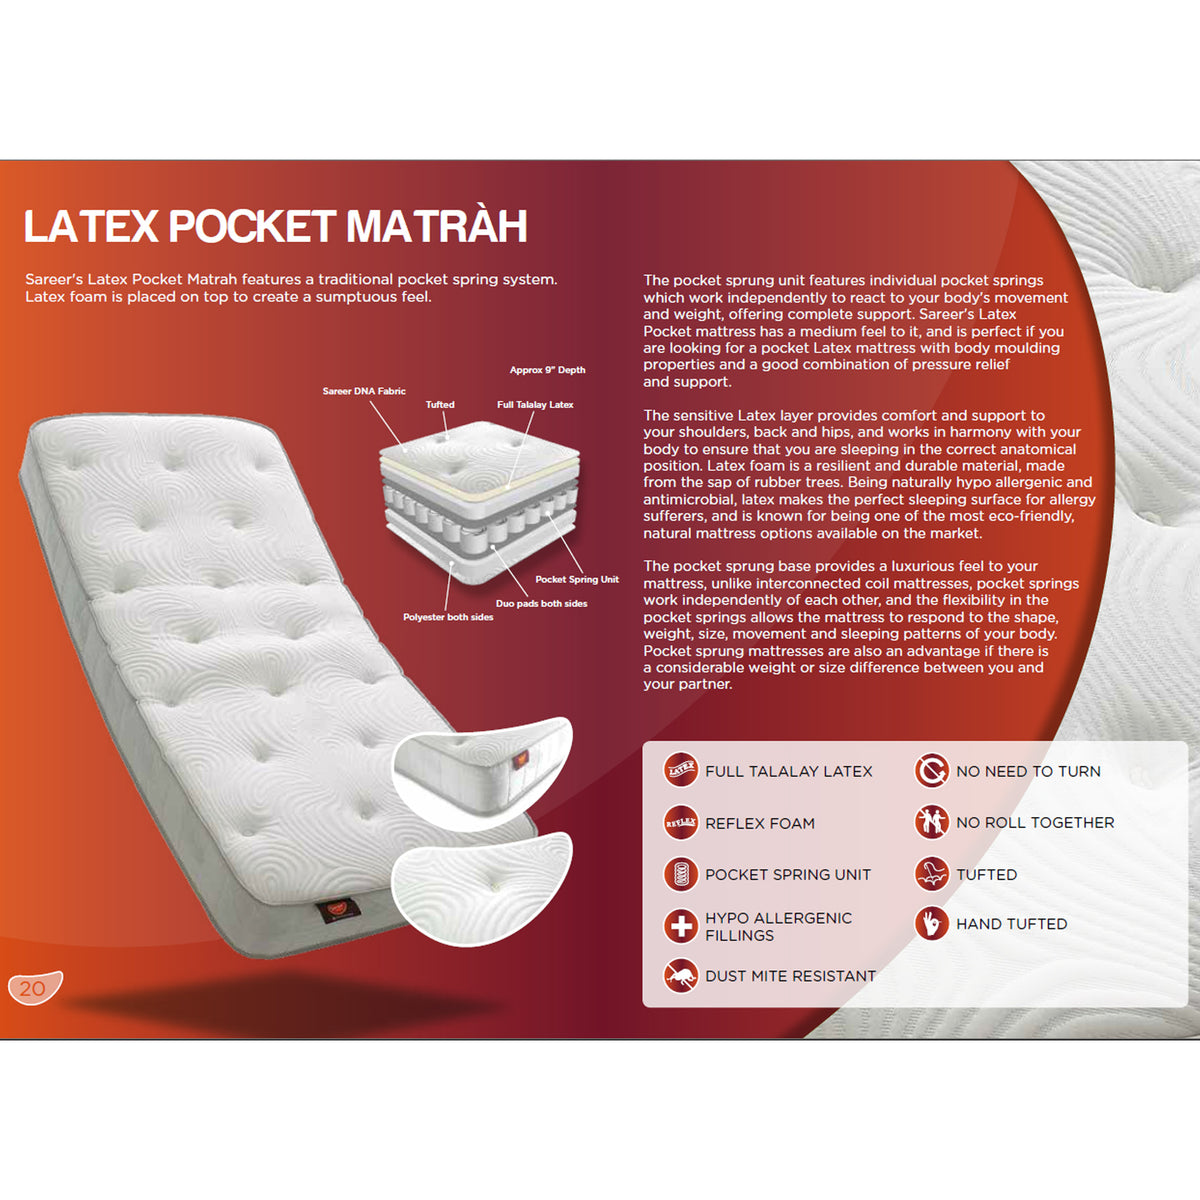 Matrah Latex Pocket Sprung Mattress